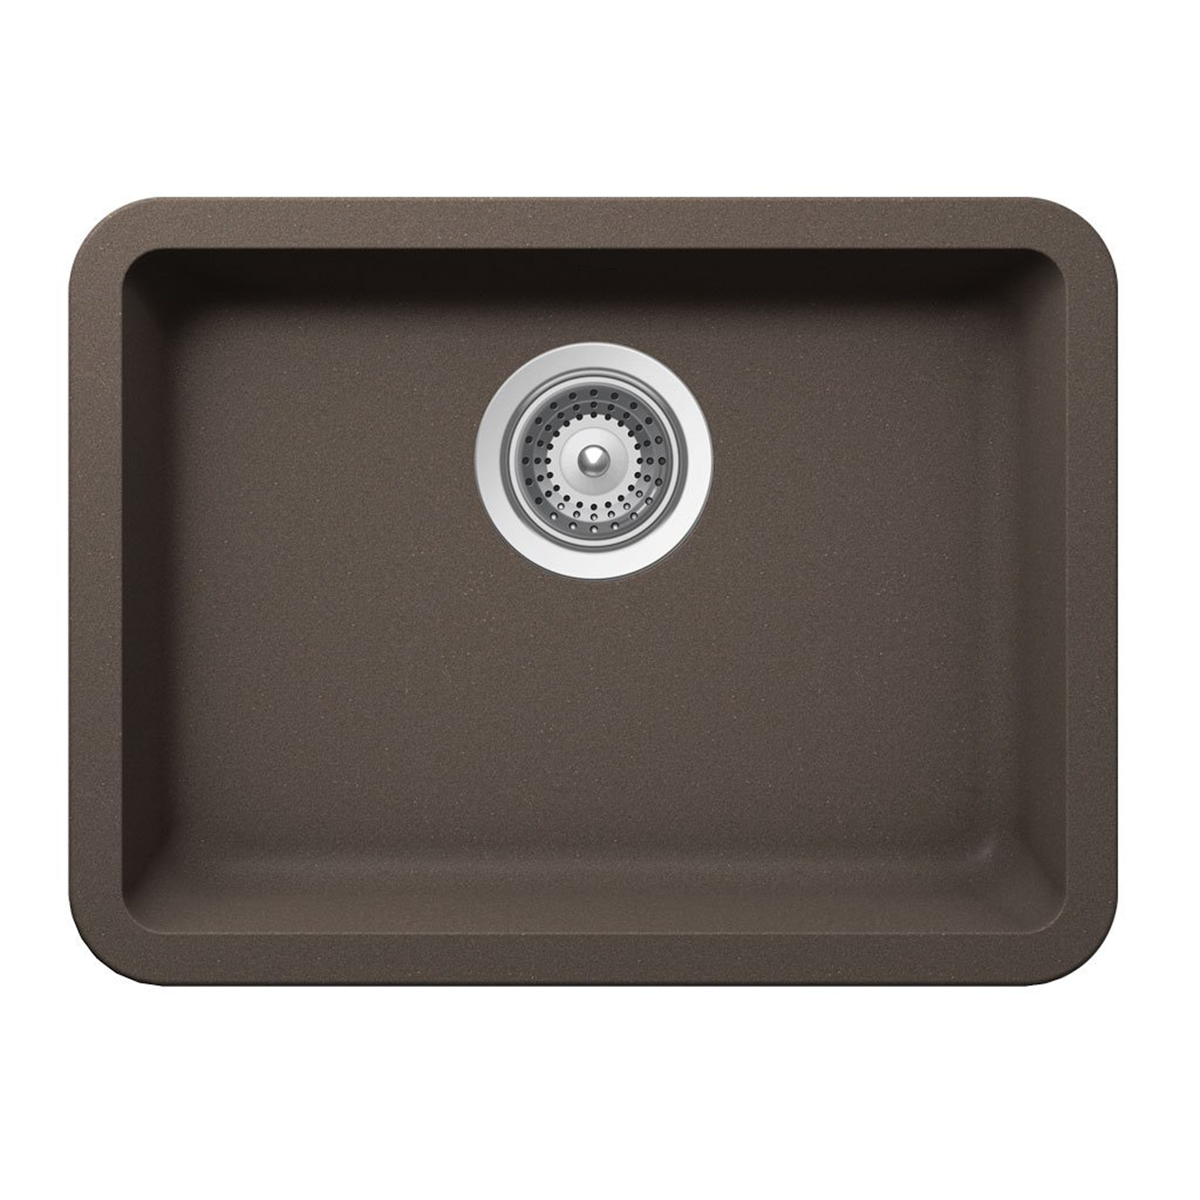 Pelican Int'l Crystallite Series PL-350 19 3/4" x 14 7/8" Mocha Granite Composite Undermount Kitchen Sink